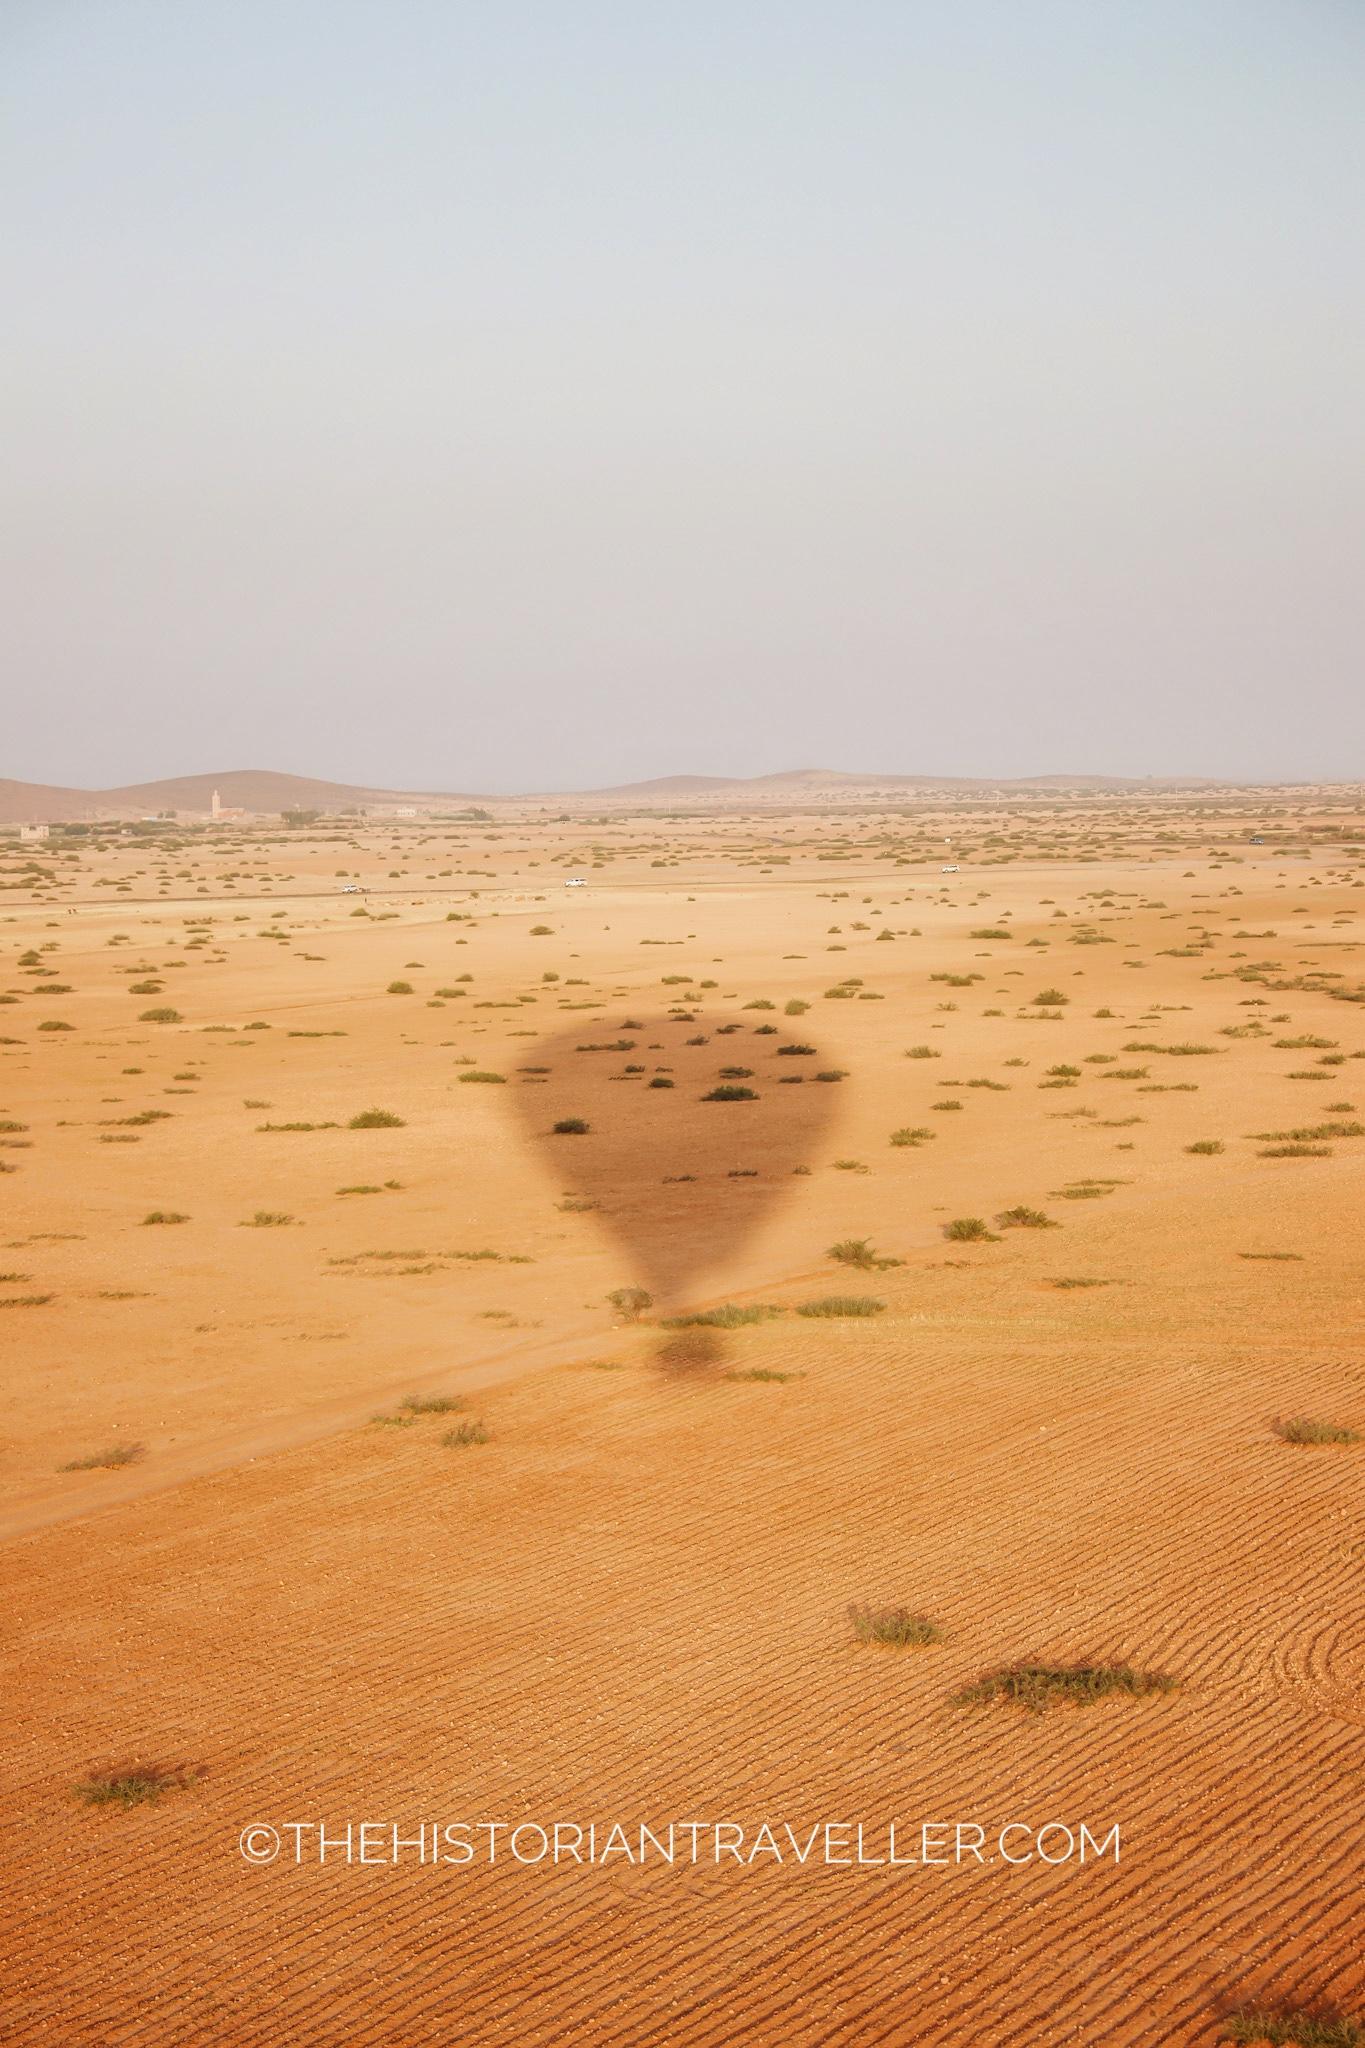 Hot air balloon in Marrakech - 